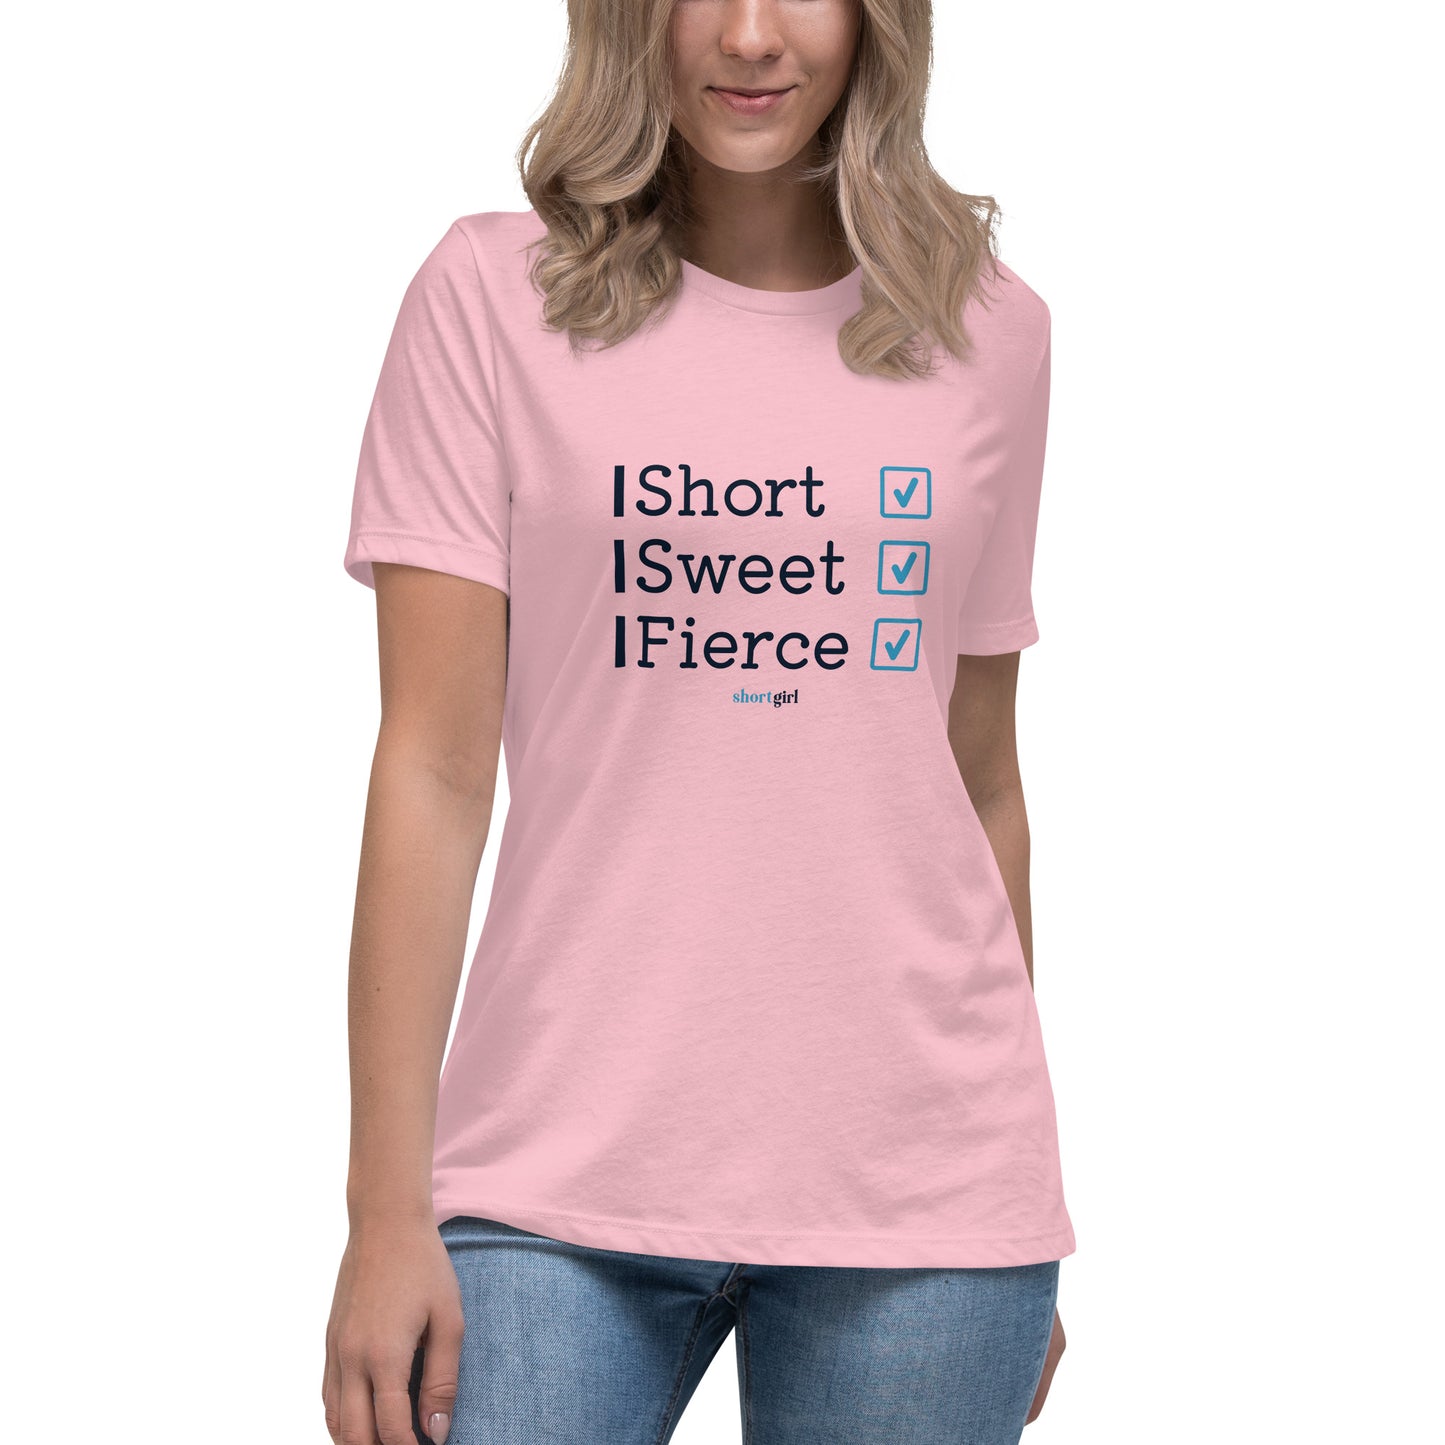 Women's Relaxed T-Shirt - Short Sweet Fierce